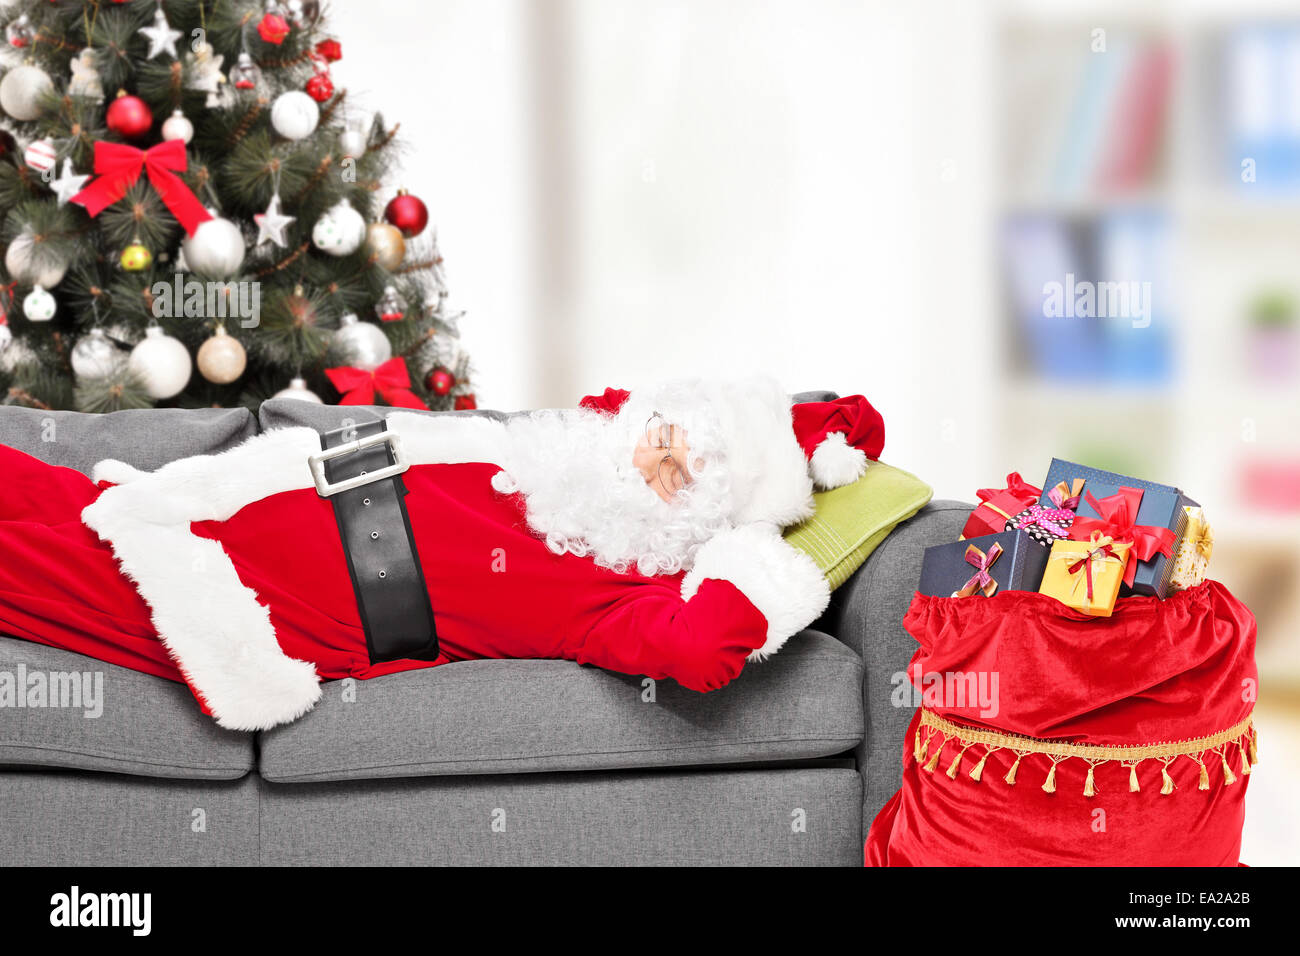 Dormire Nella Casa Di Babbo Natale.Santa Claus Dormire Con Un Albero Di Natale Su Un Divano A Casa Con Un Sacco Di Regali Accanto A Lui Foto Stock Alamy